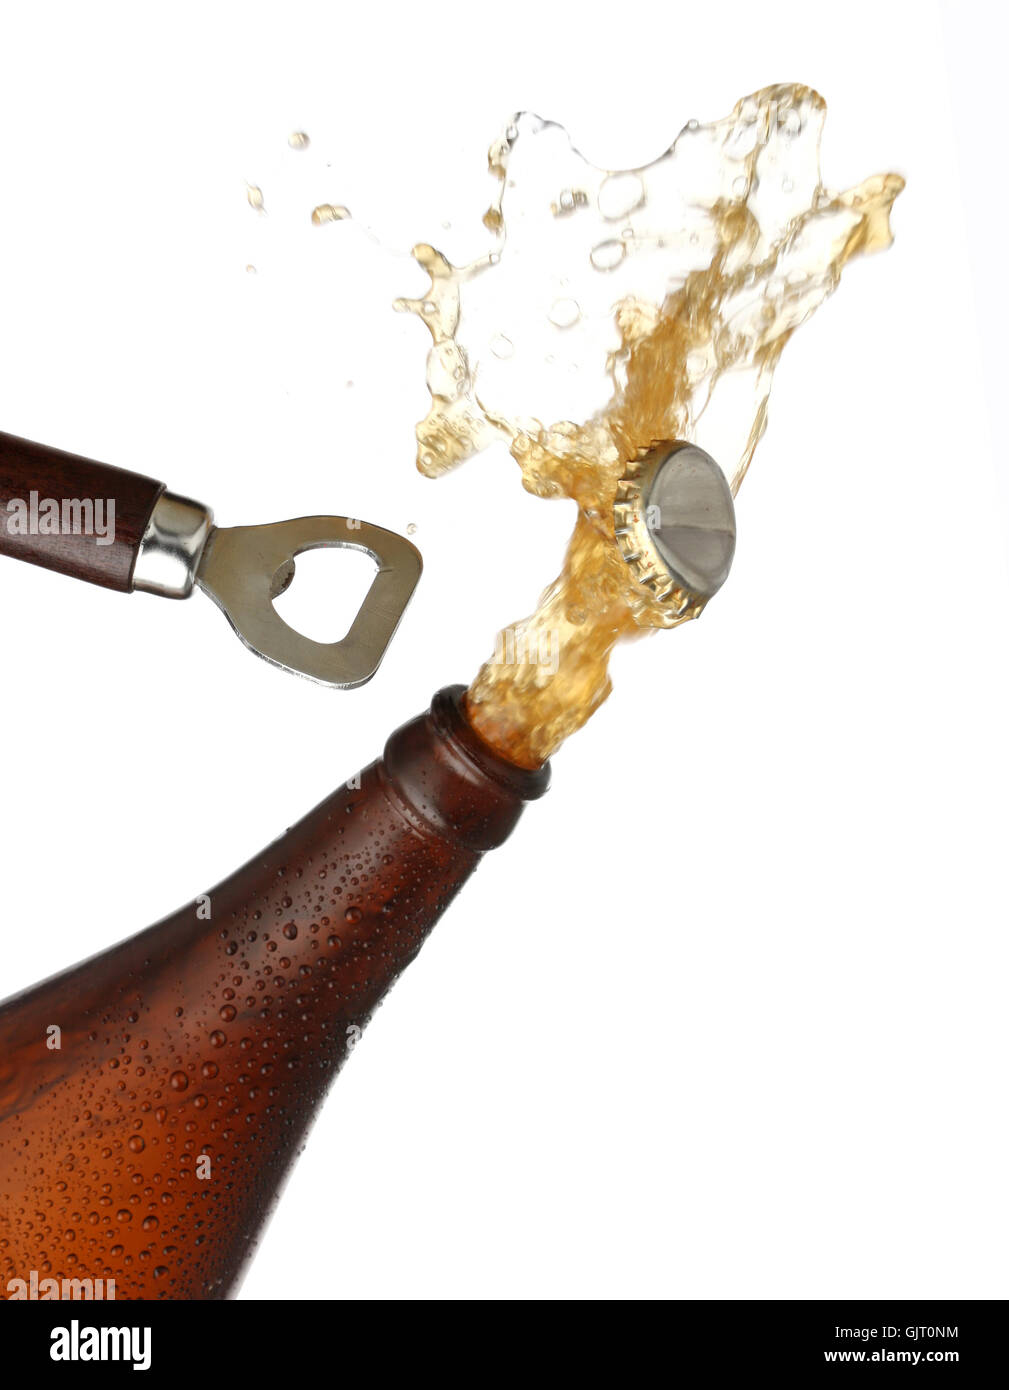 beer bottle cap Stock Photo